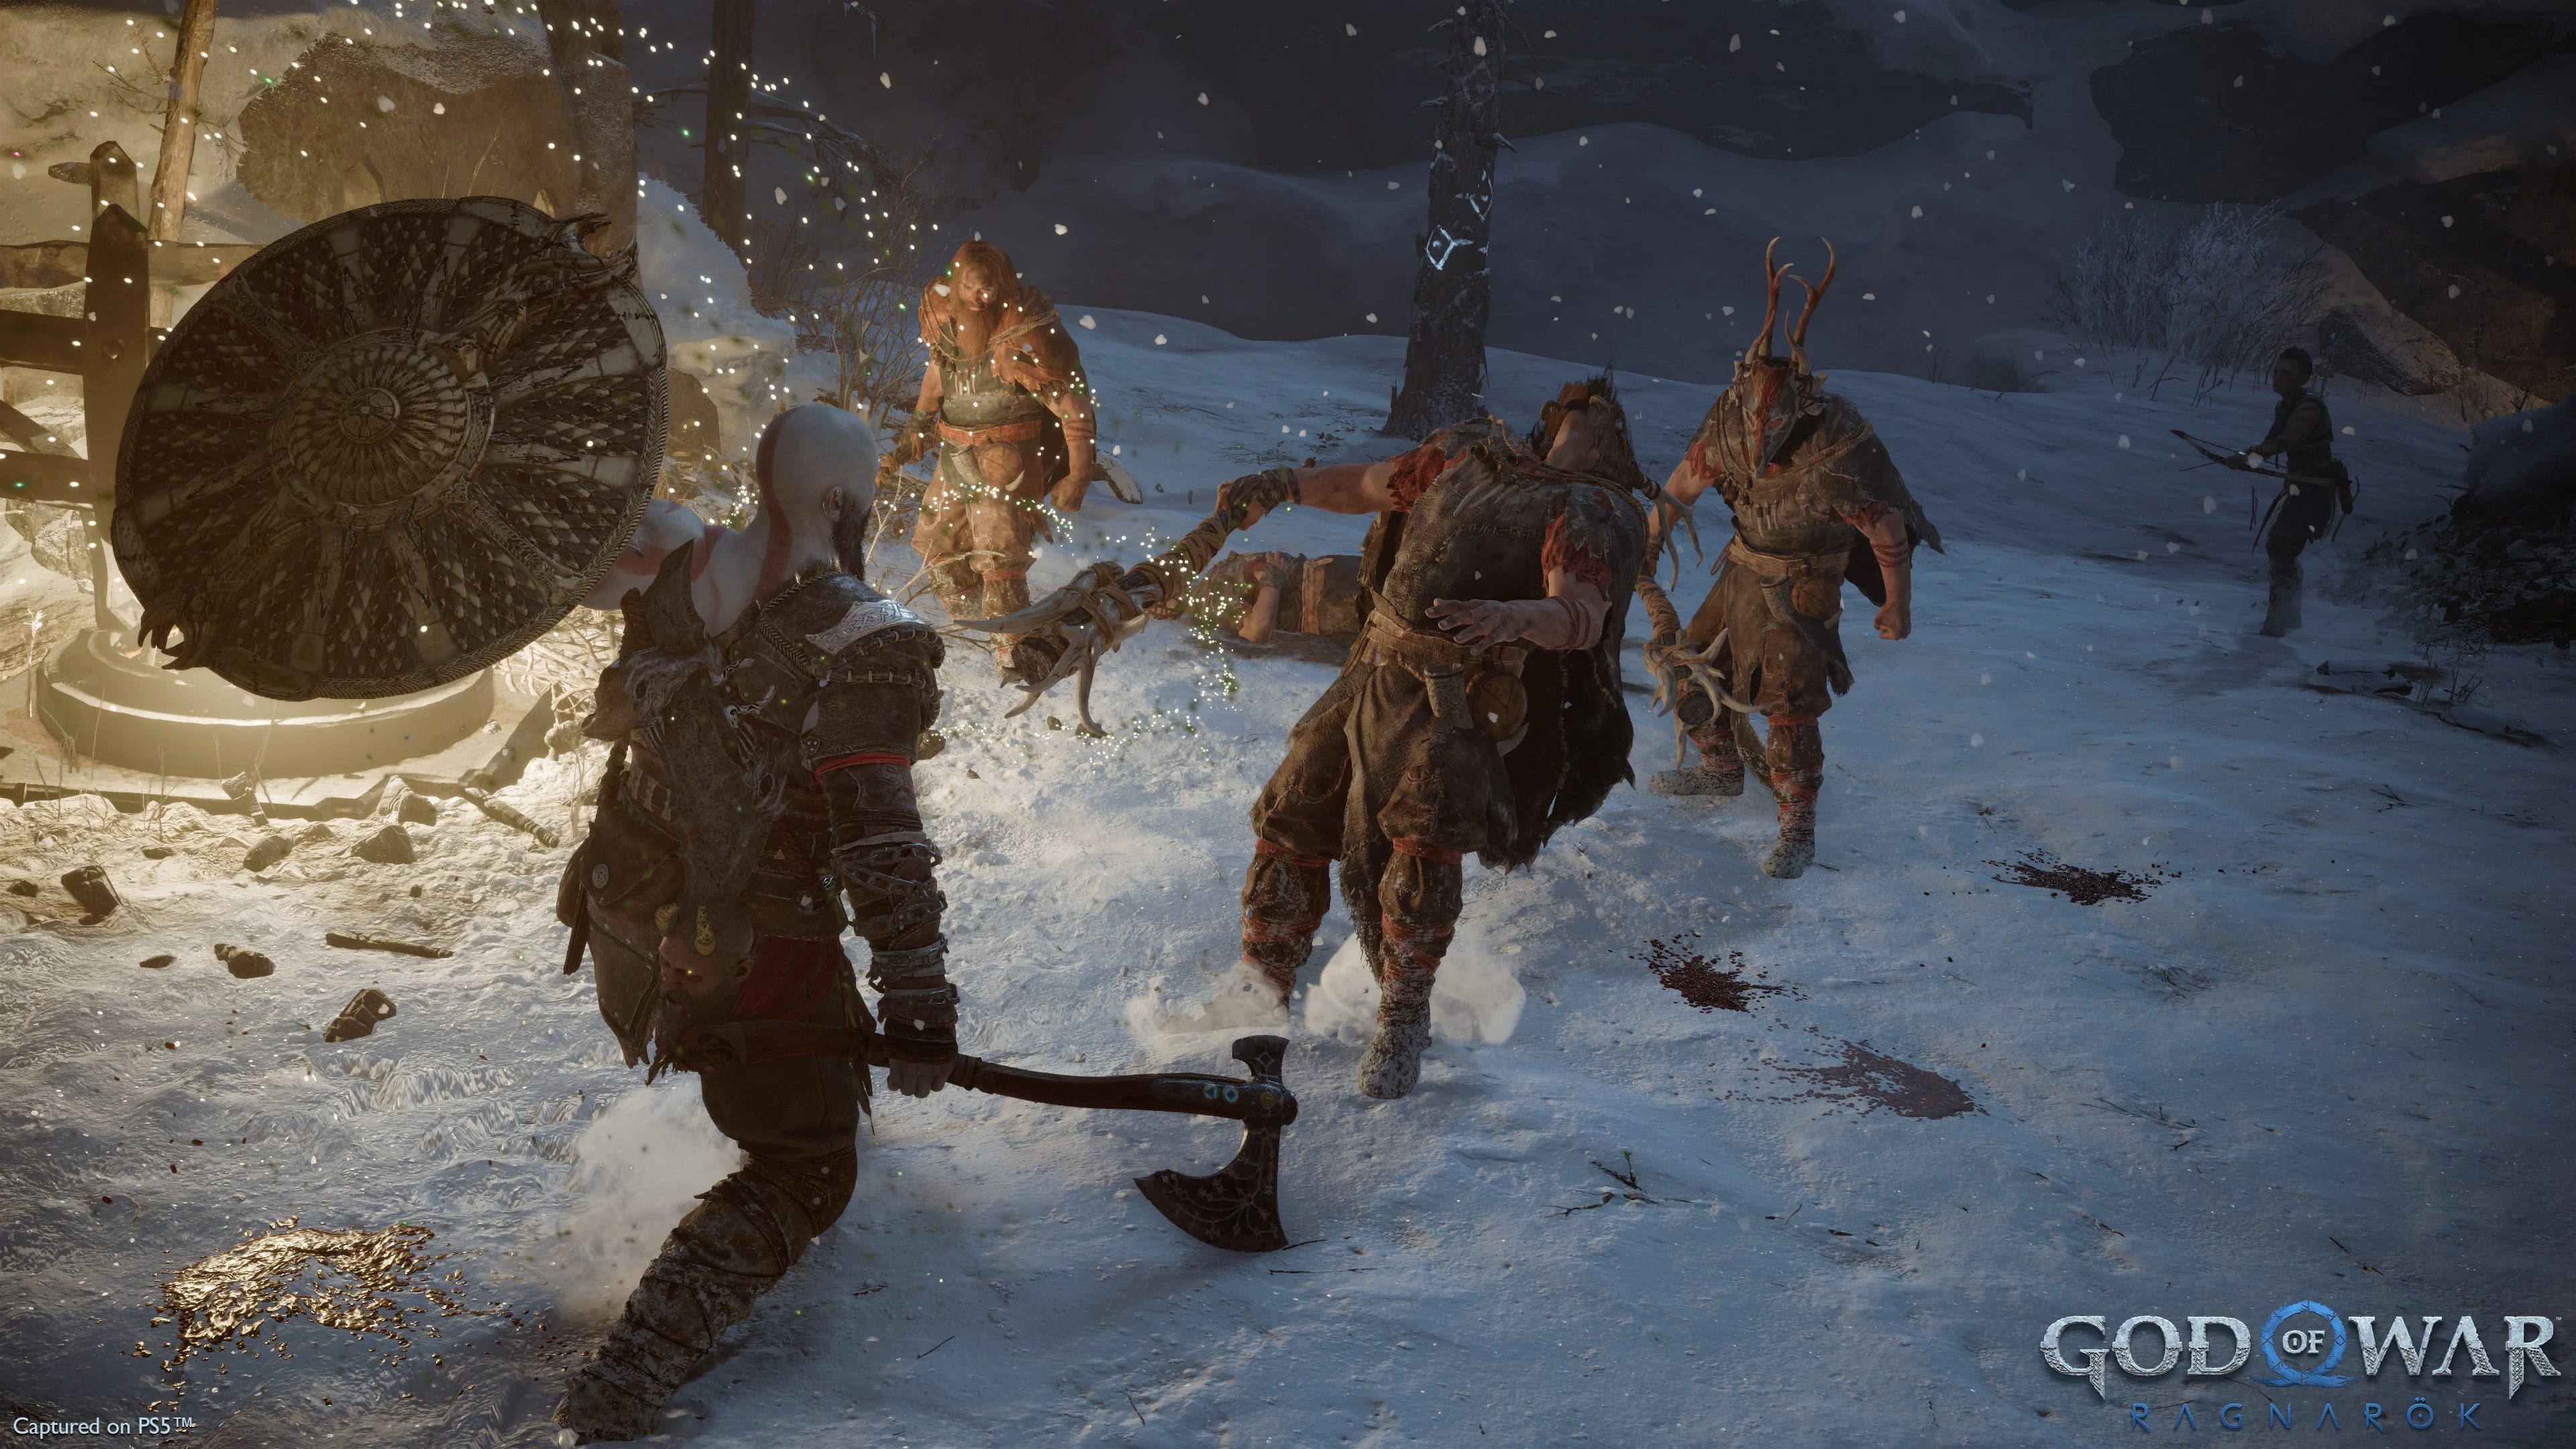  Le prime anticipazioni su God of War: Ragnarok. I giornalisti lodano il gioco per il sistema di combattimento, la grafica, il mondo vivente, gli enigmi e i personaggi.-4